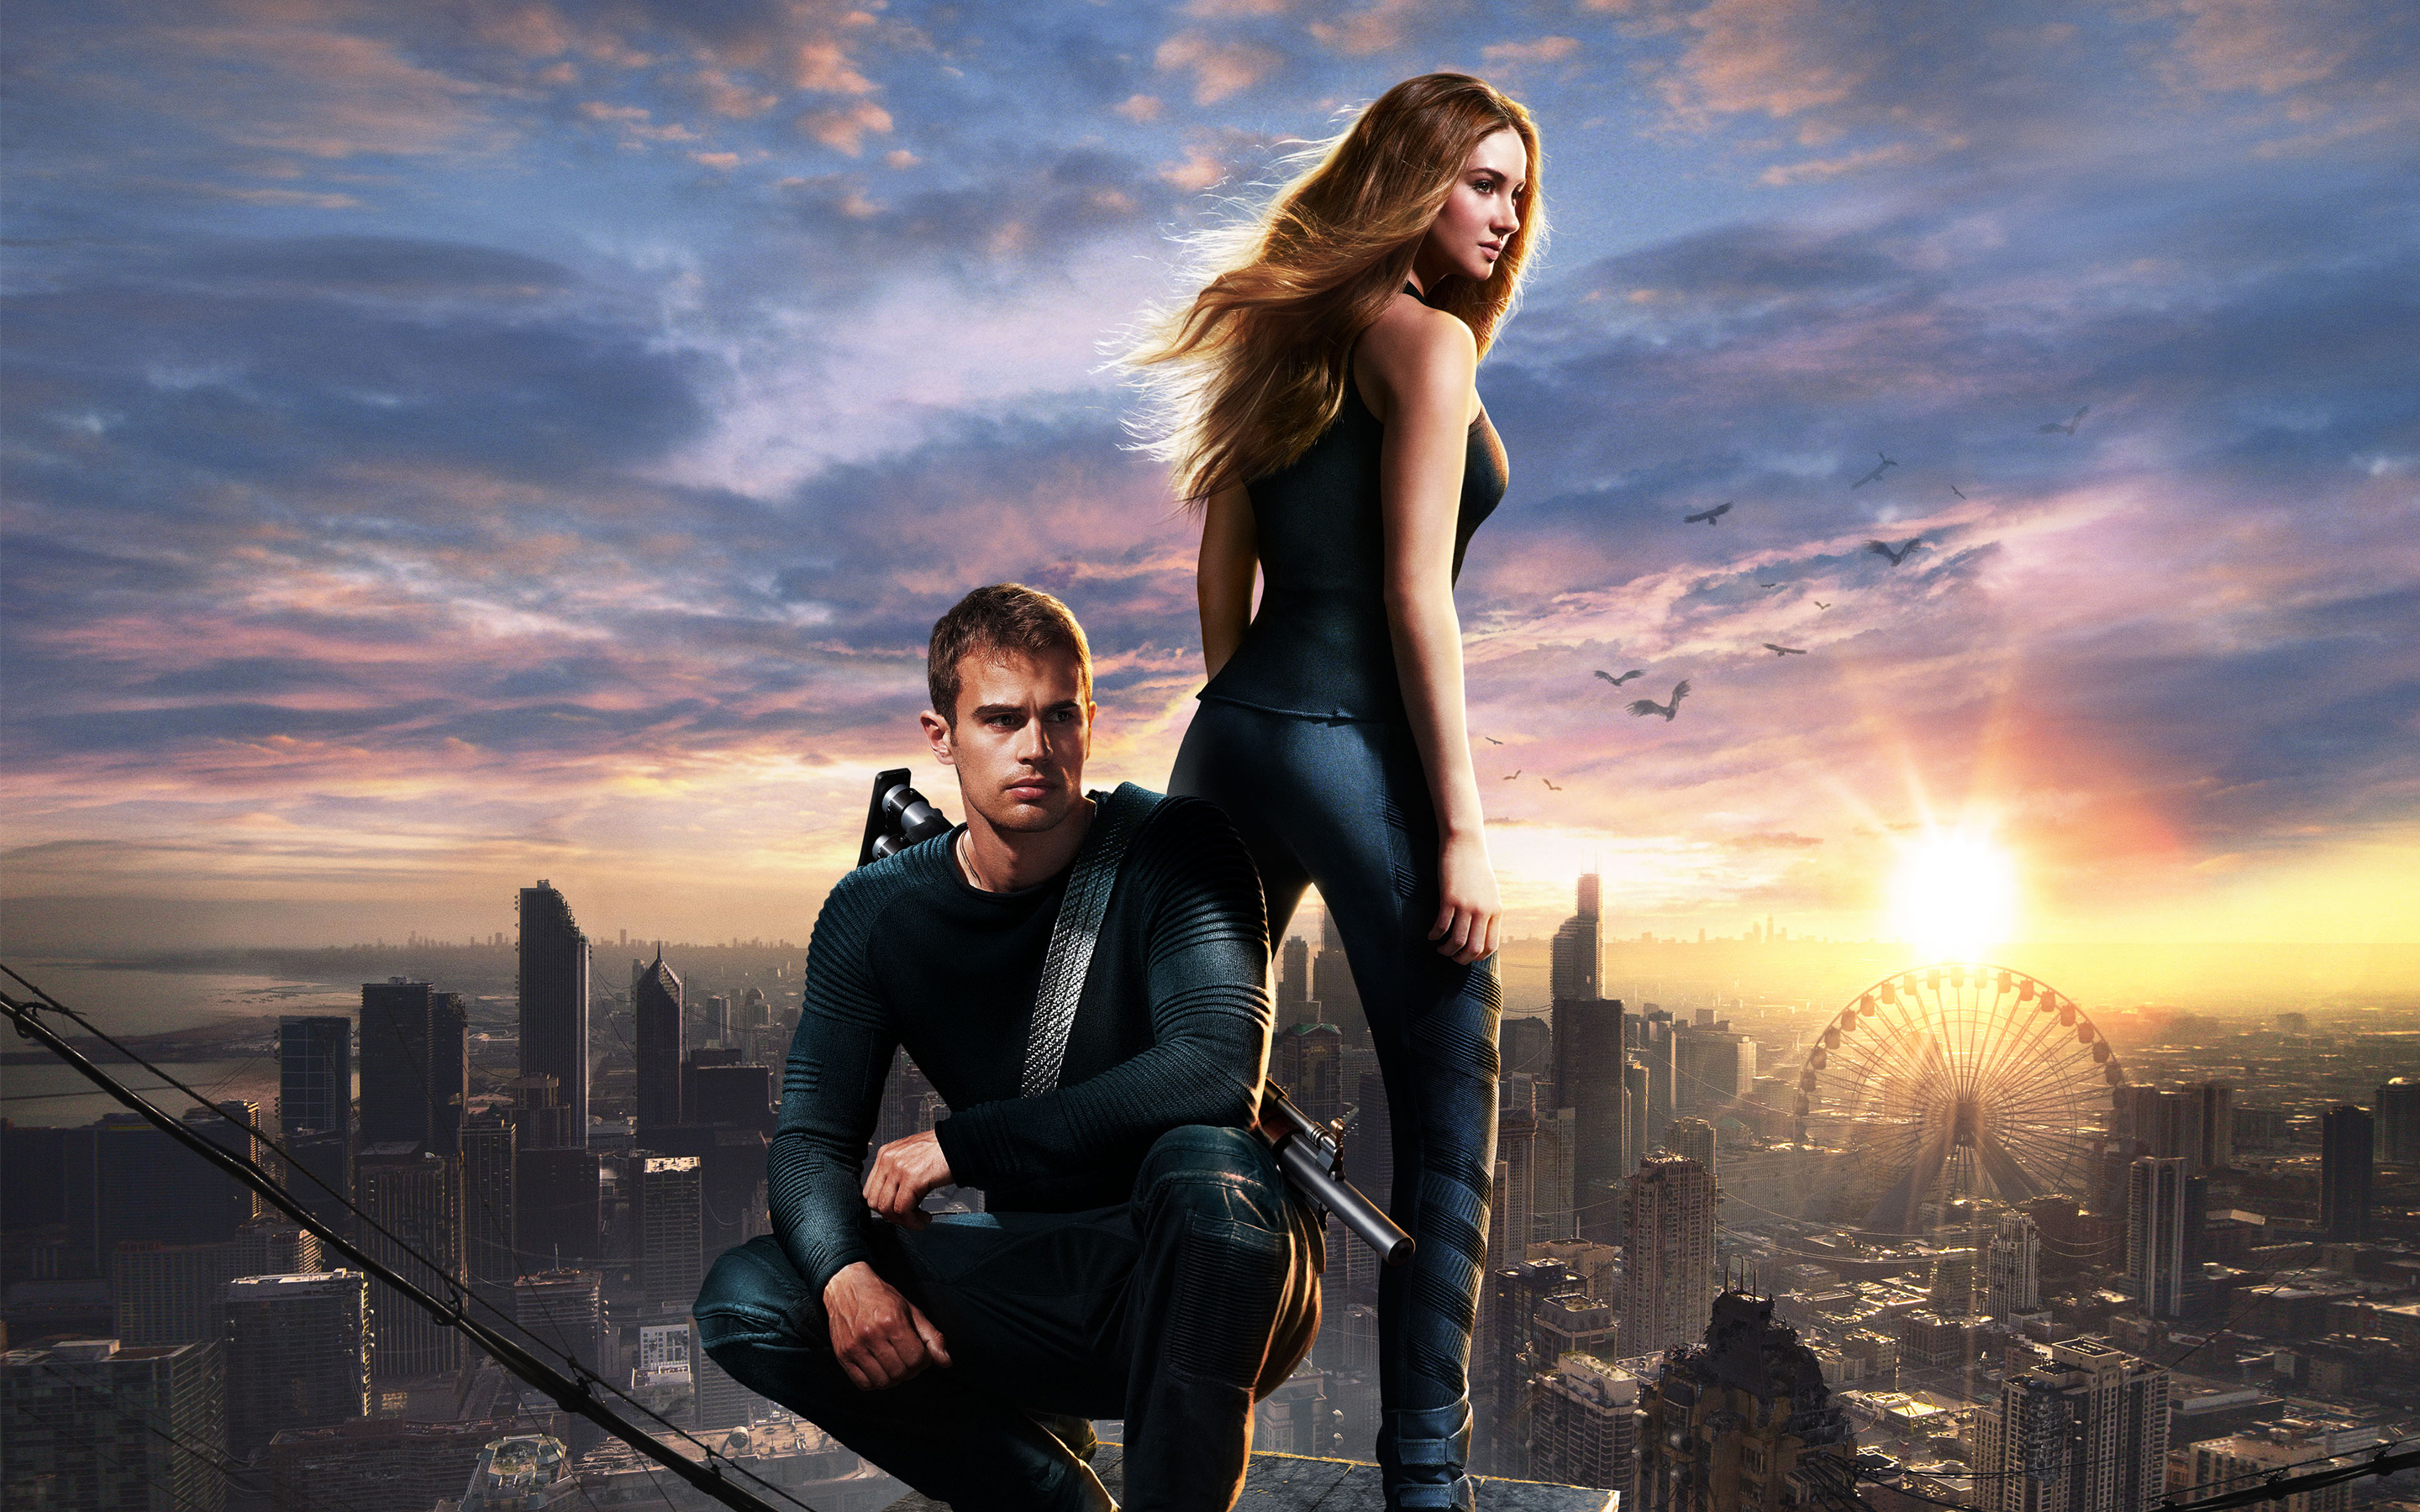 Movie Divergent HD Wallpaper | Background Image